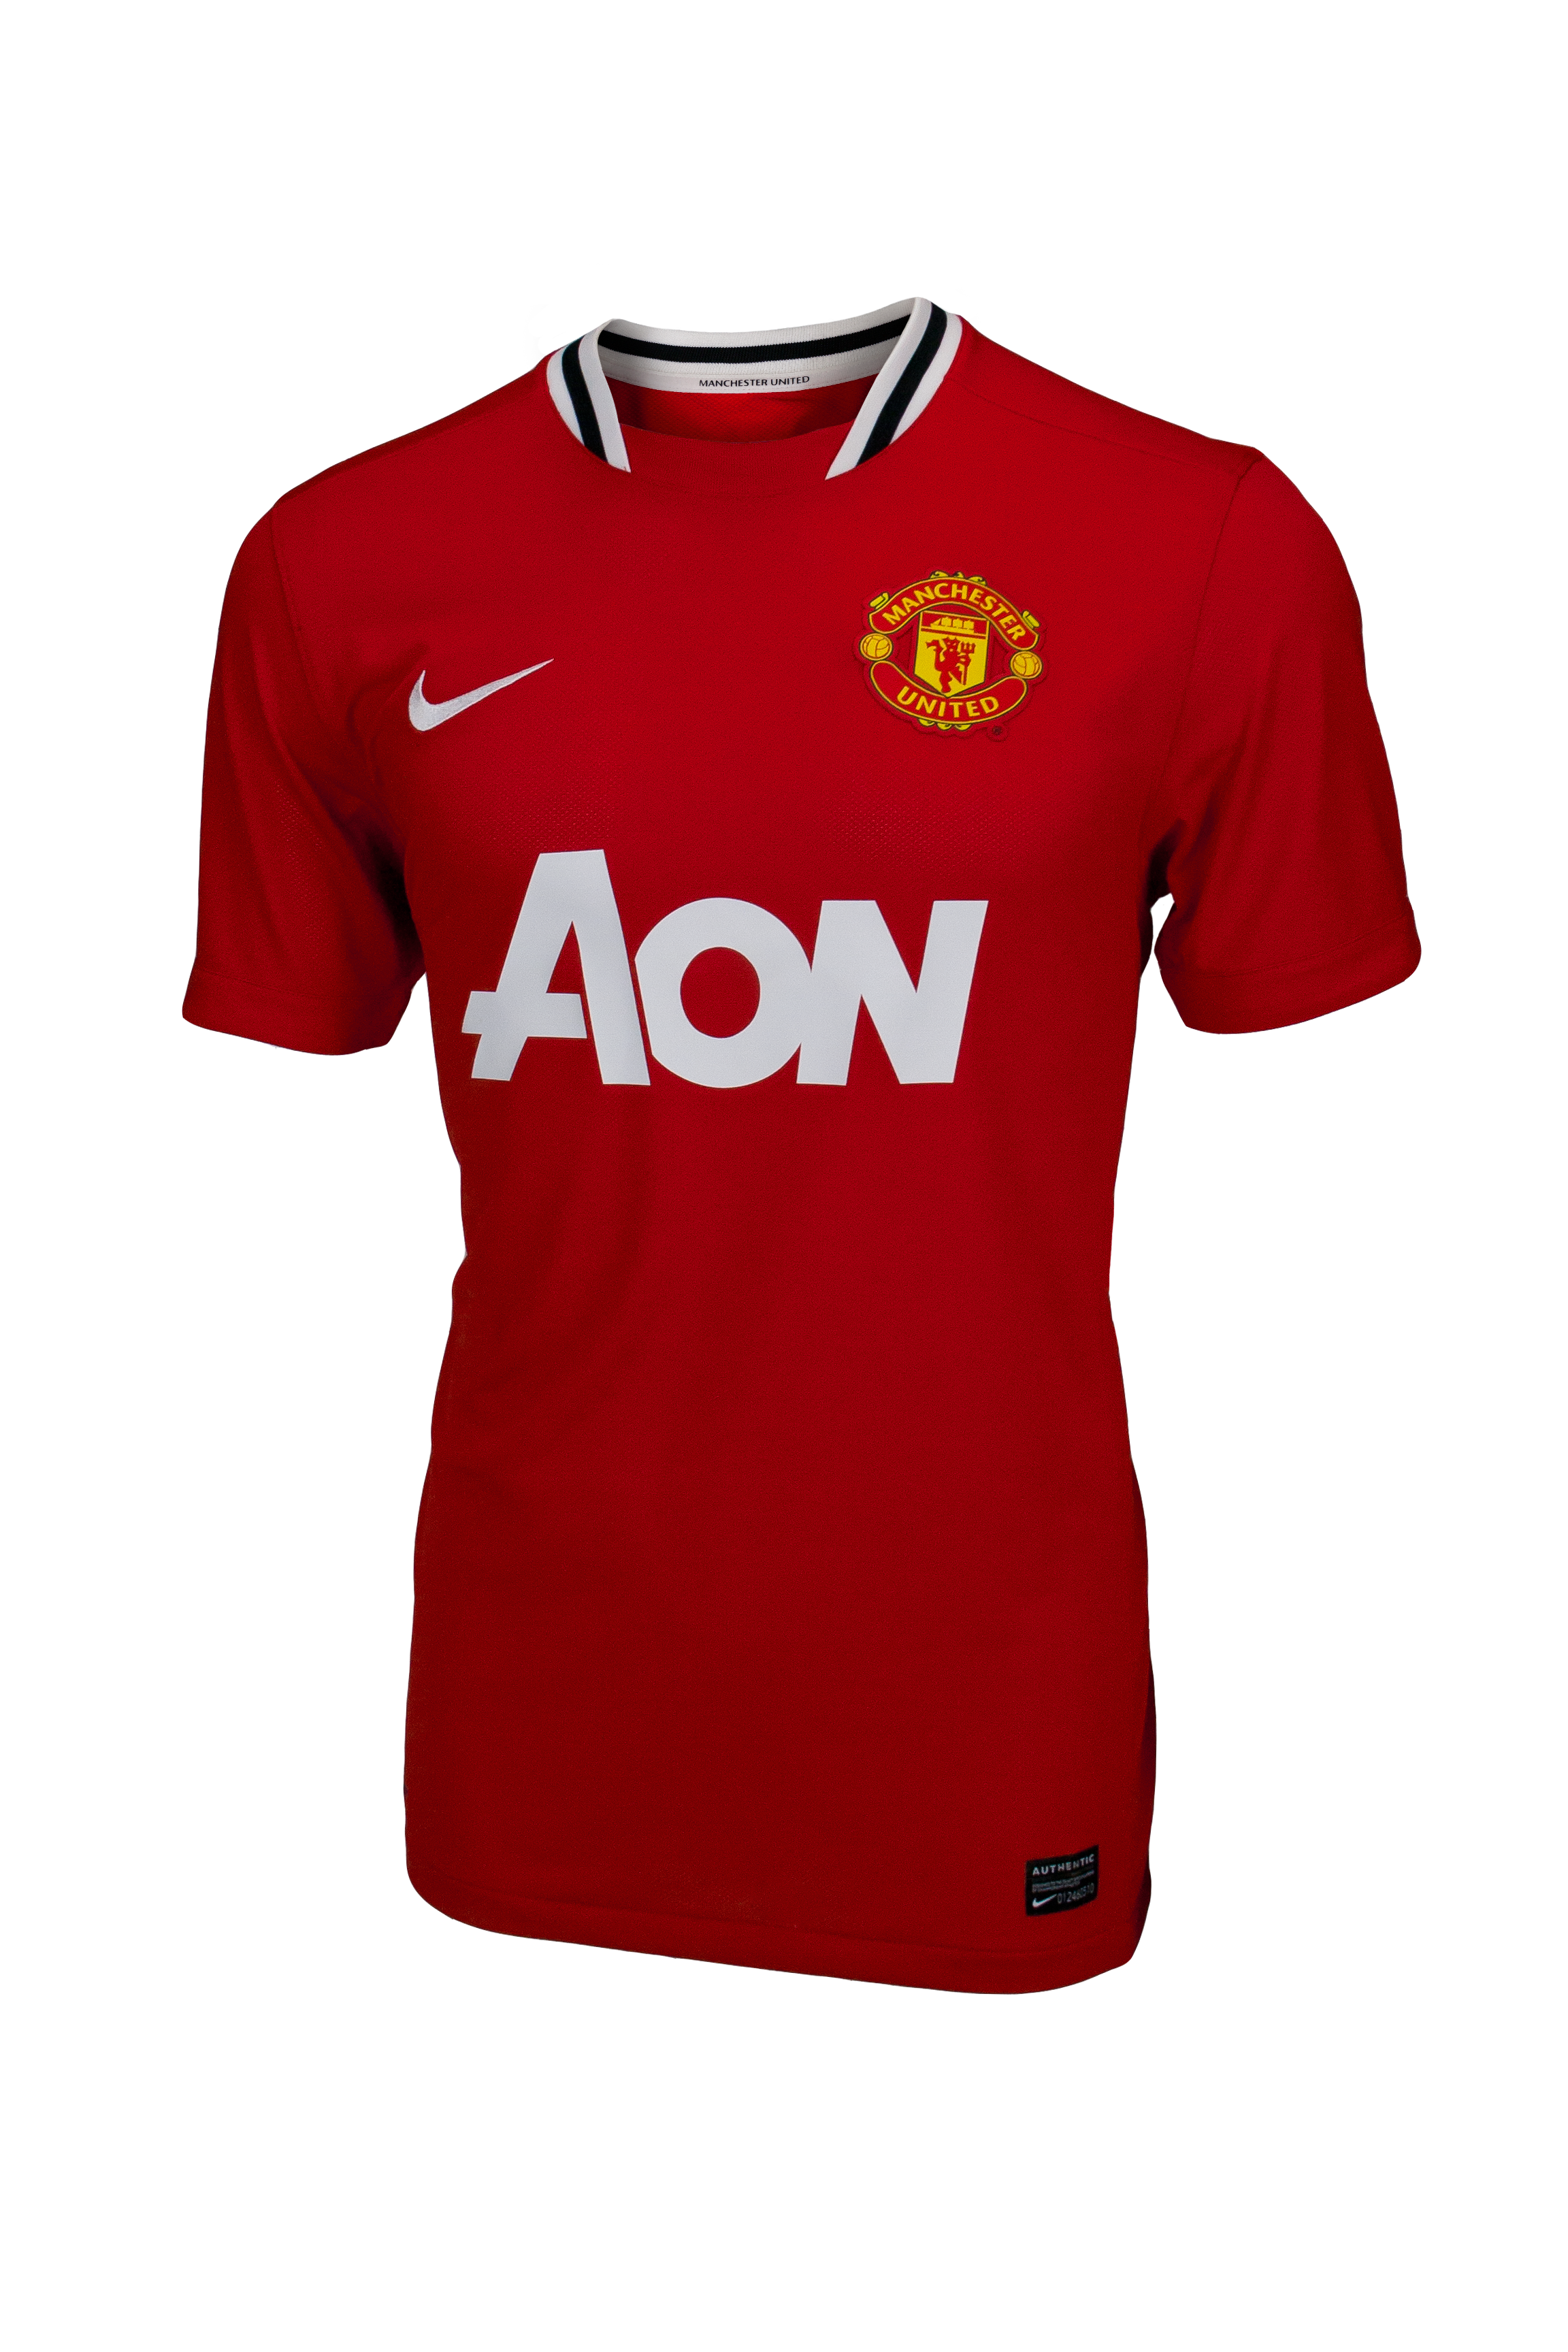 New Nike Manchester United 2011/12 Home Kit Revealed - SoccerProse.com